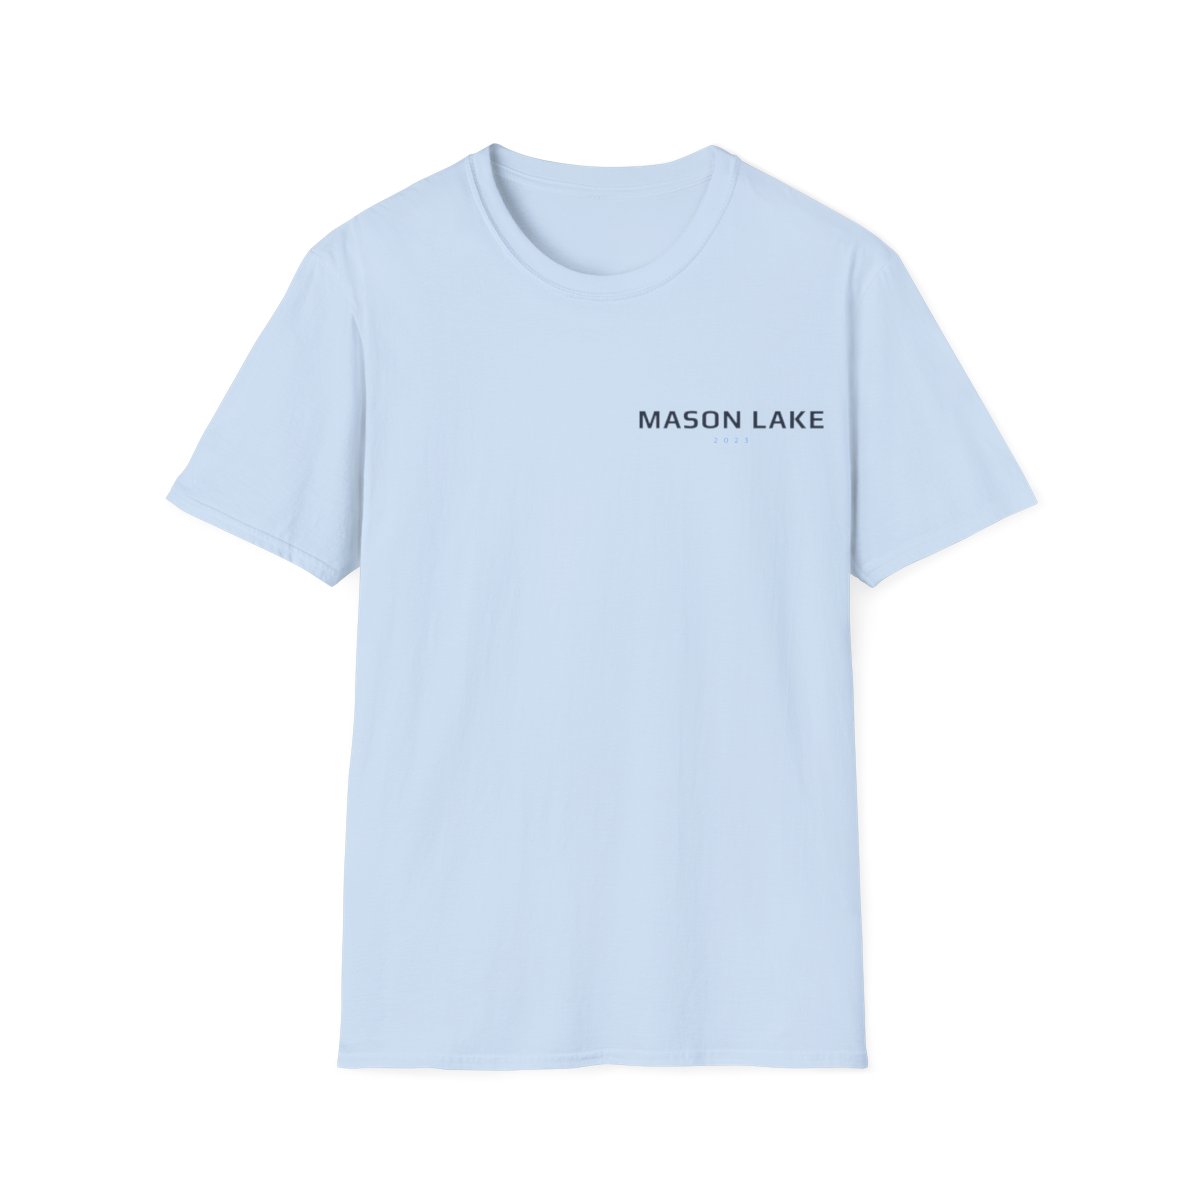 Mason Lake Wakeboarder Shirt product thumbnail image